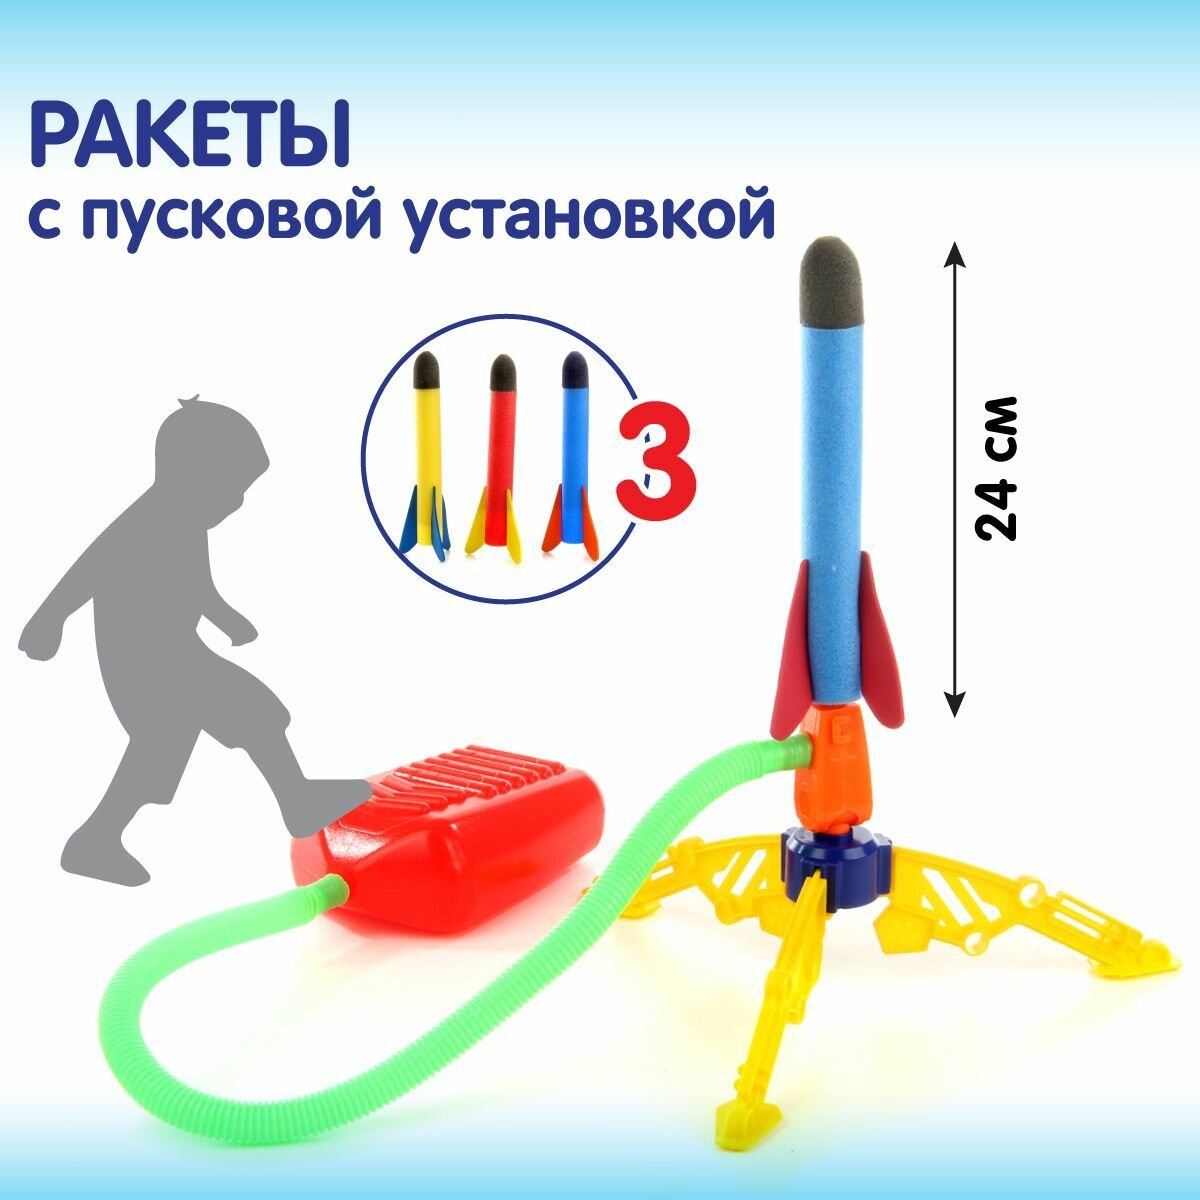 Детская ракетная установка Veld Co / Ракета с запуском / Летающая игрушка